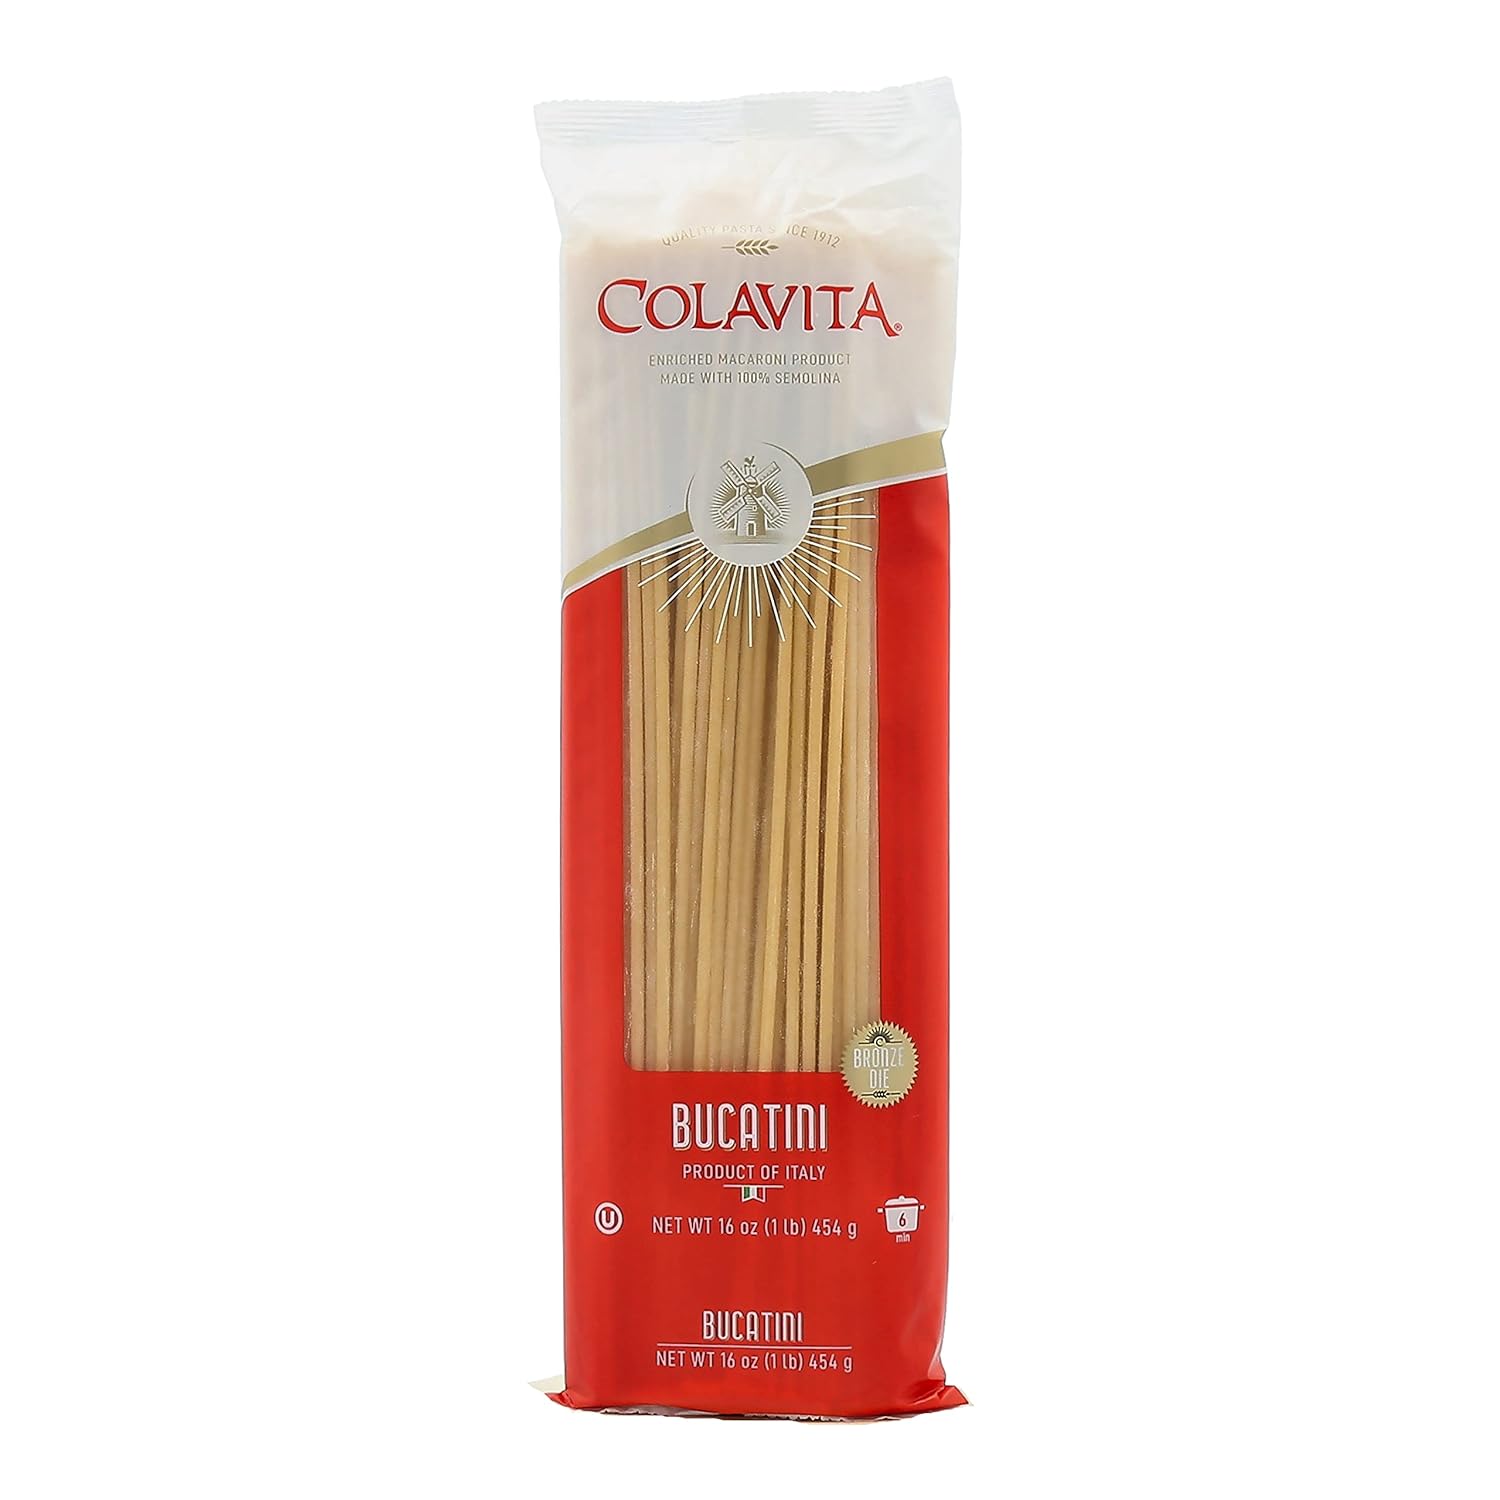 Colavita Pasta - Bucatini, 1 Pound - Pack of 20